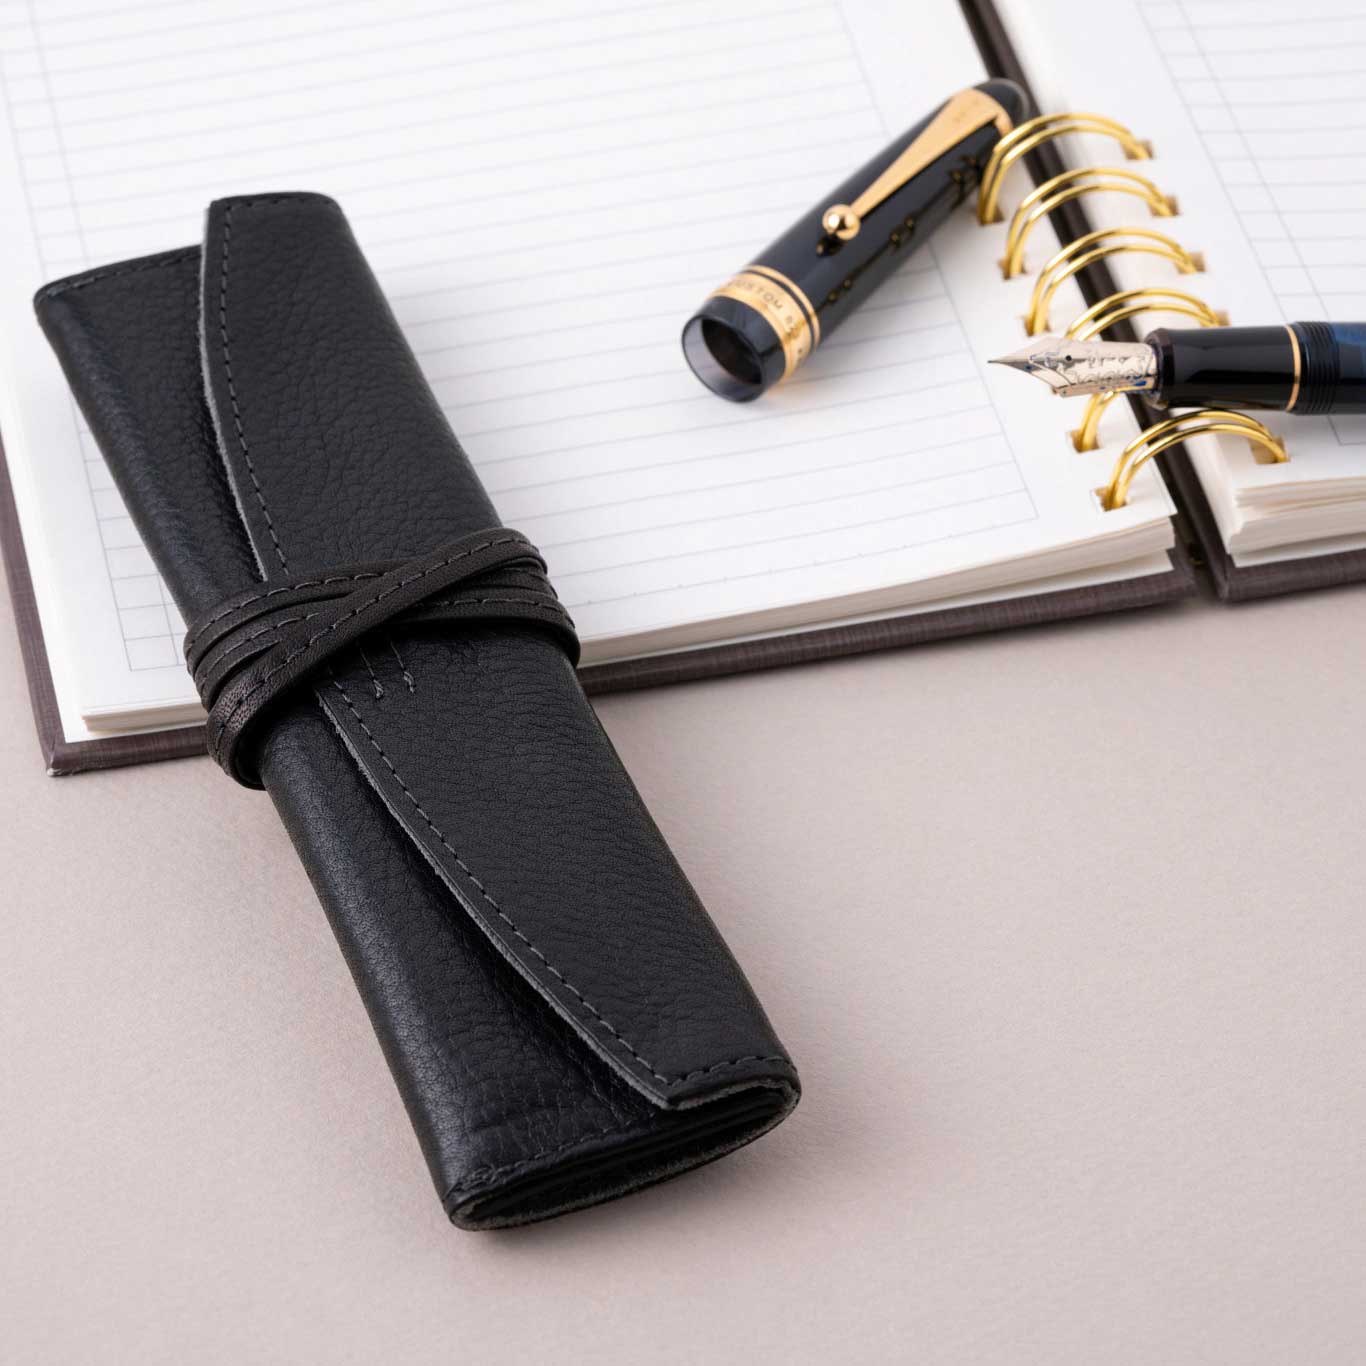 Tom Leather Pencil Case - Zippered Pen Pouch (Cognac)